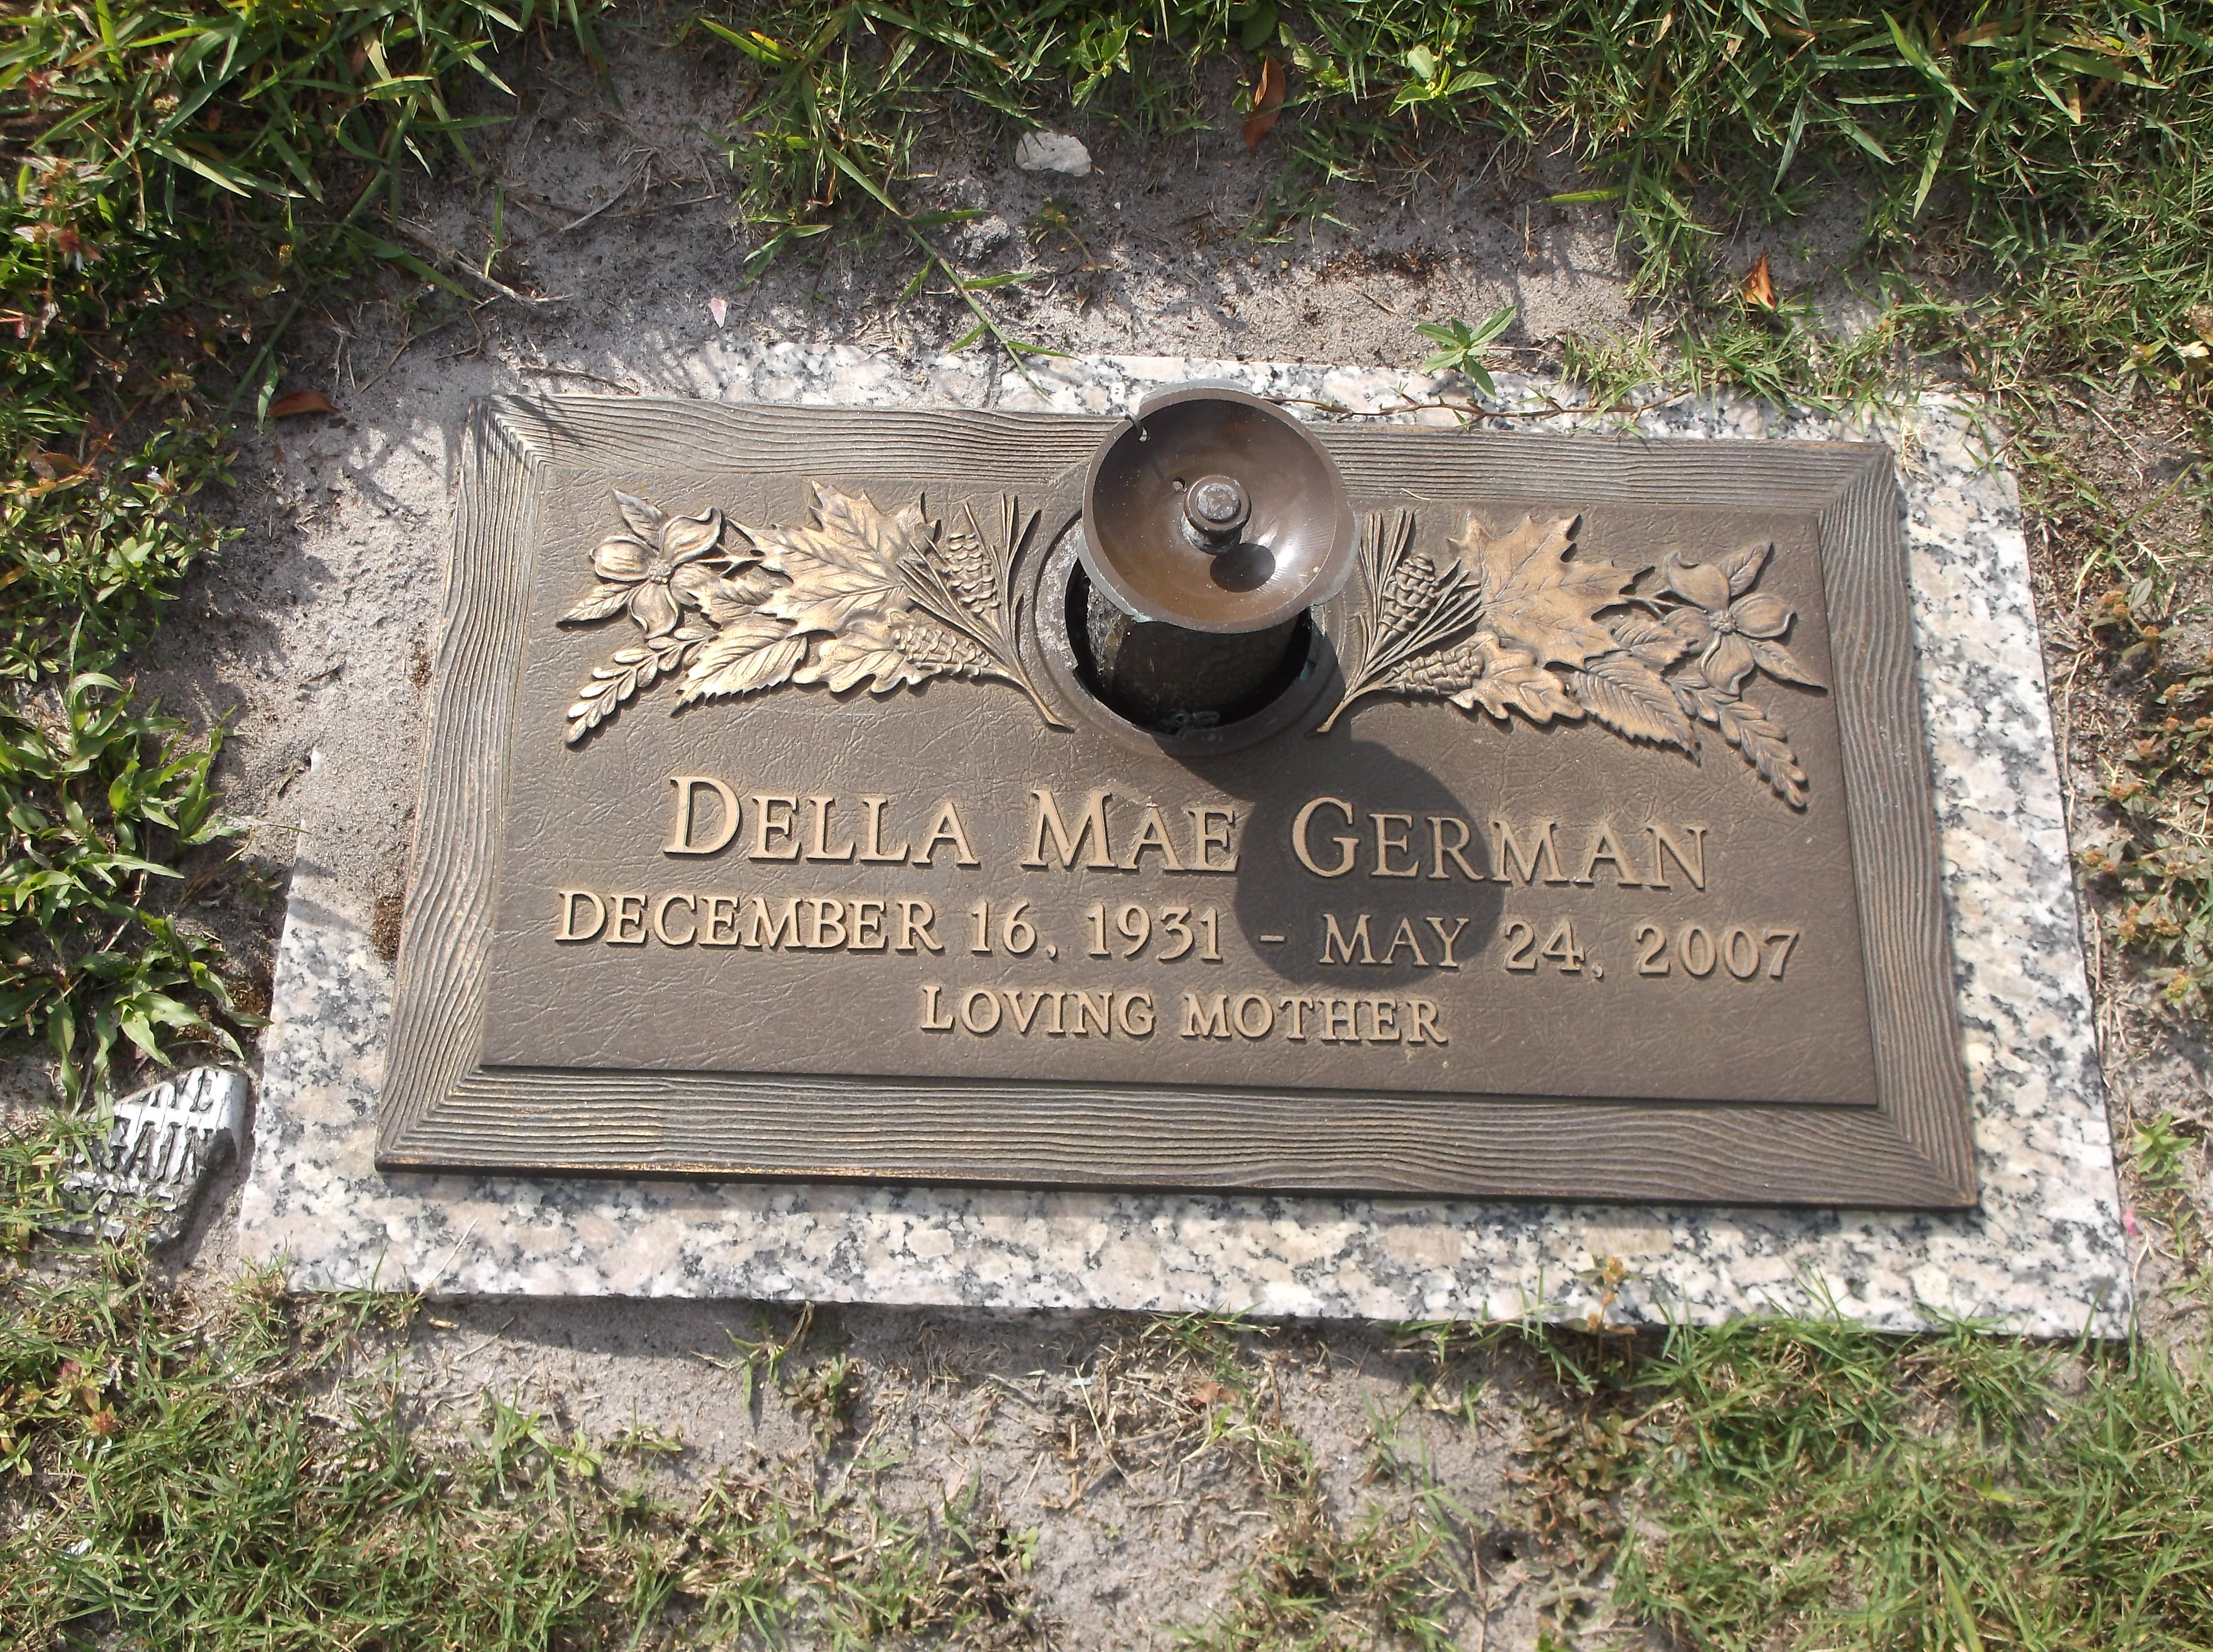 Della Mae German